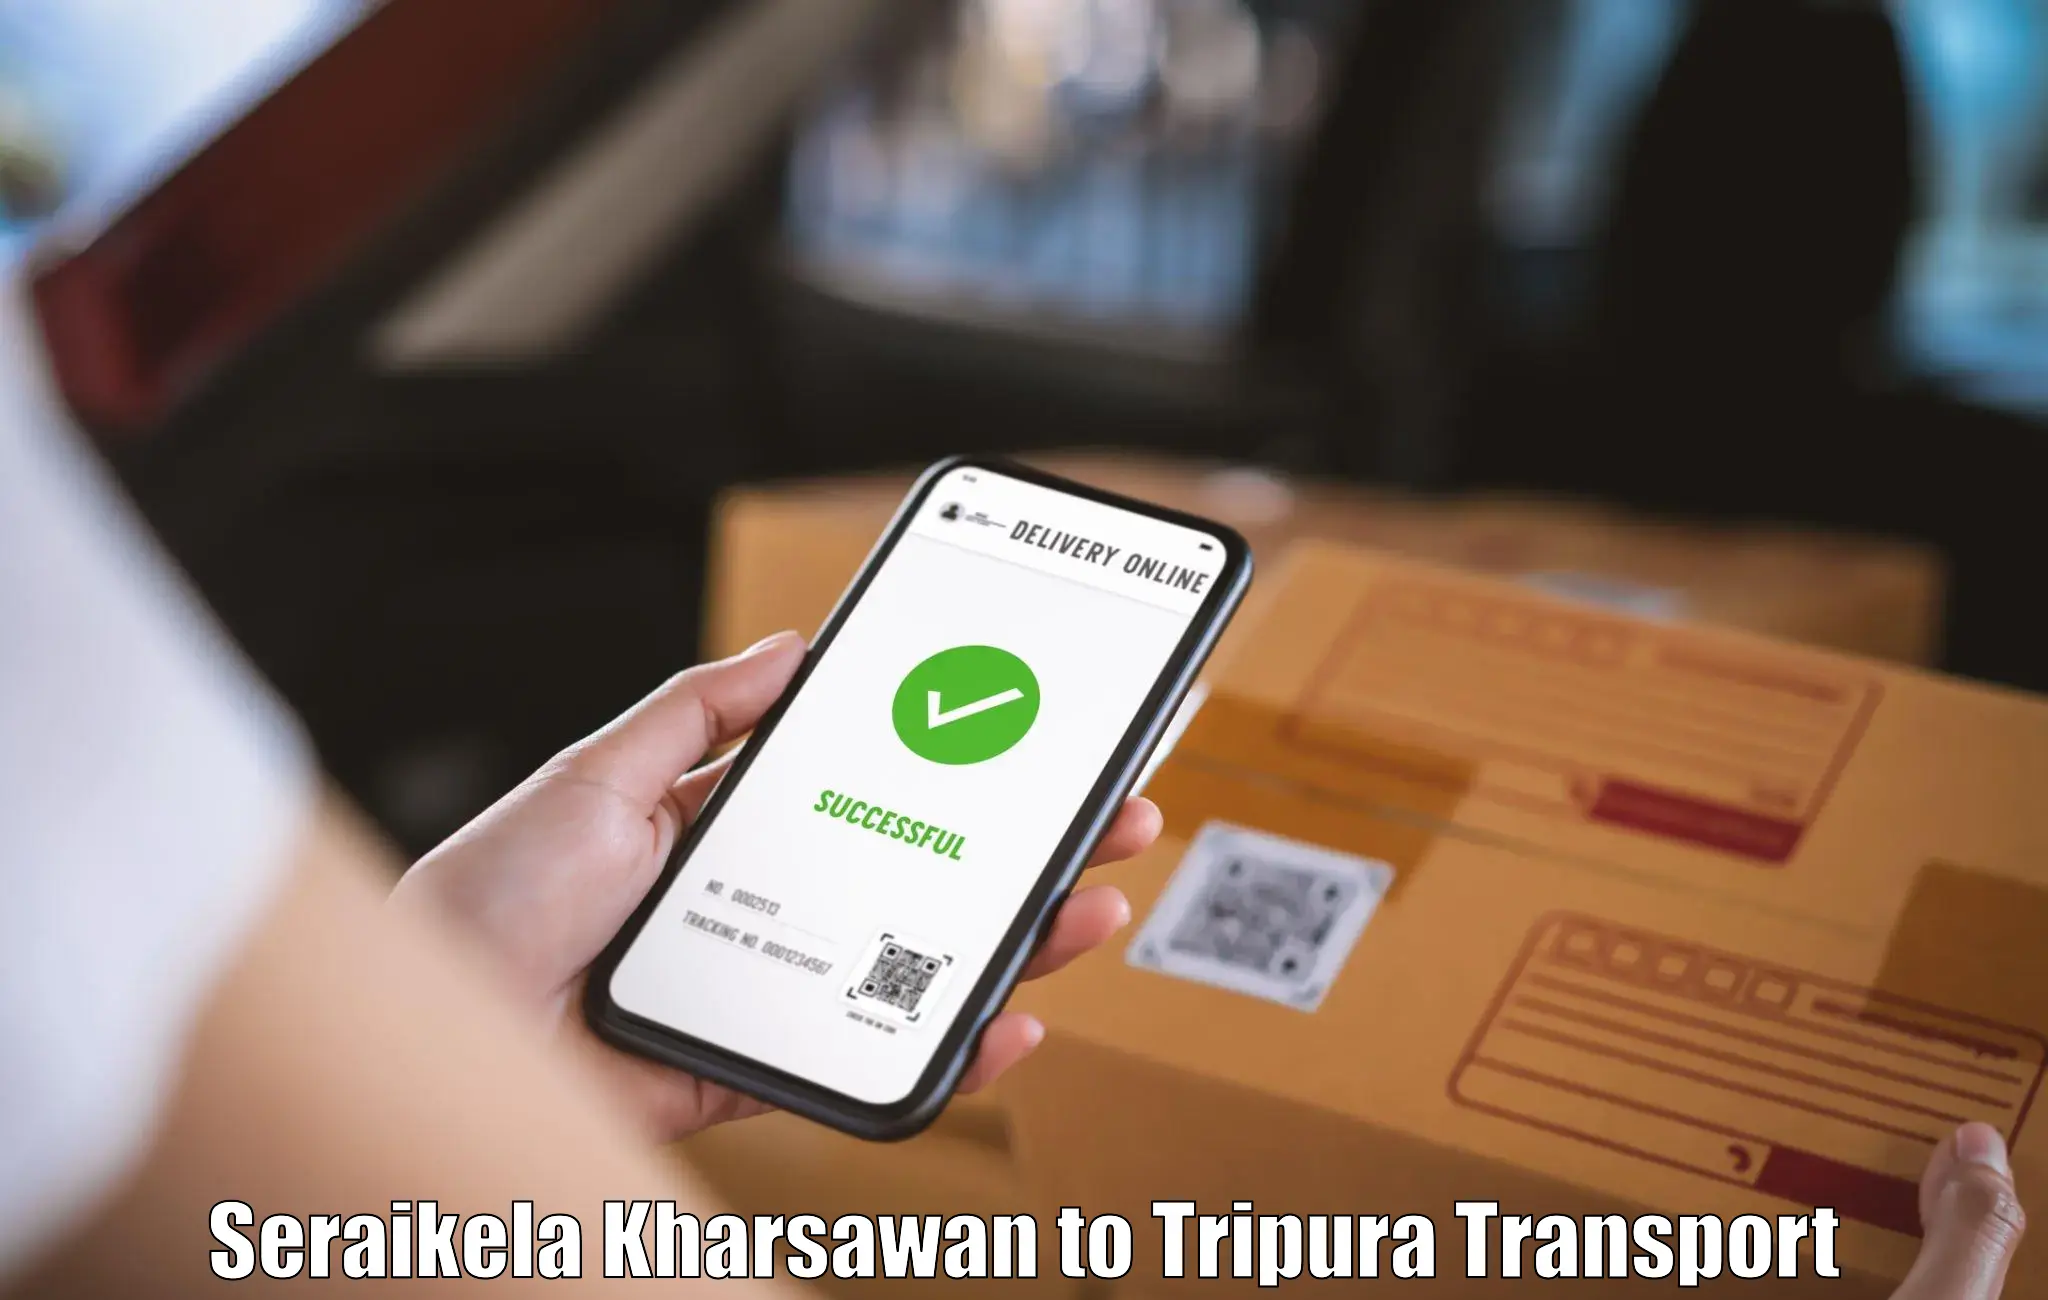 Pick up transport service Seraikela Kharsawan to Manughat